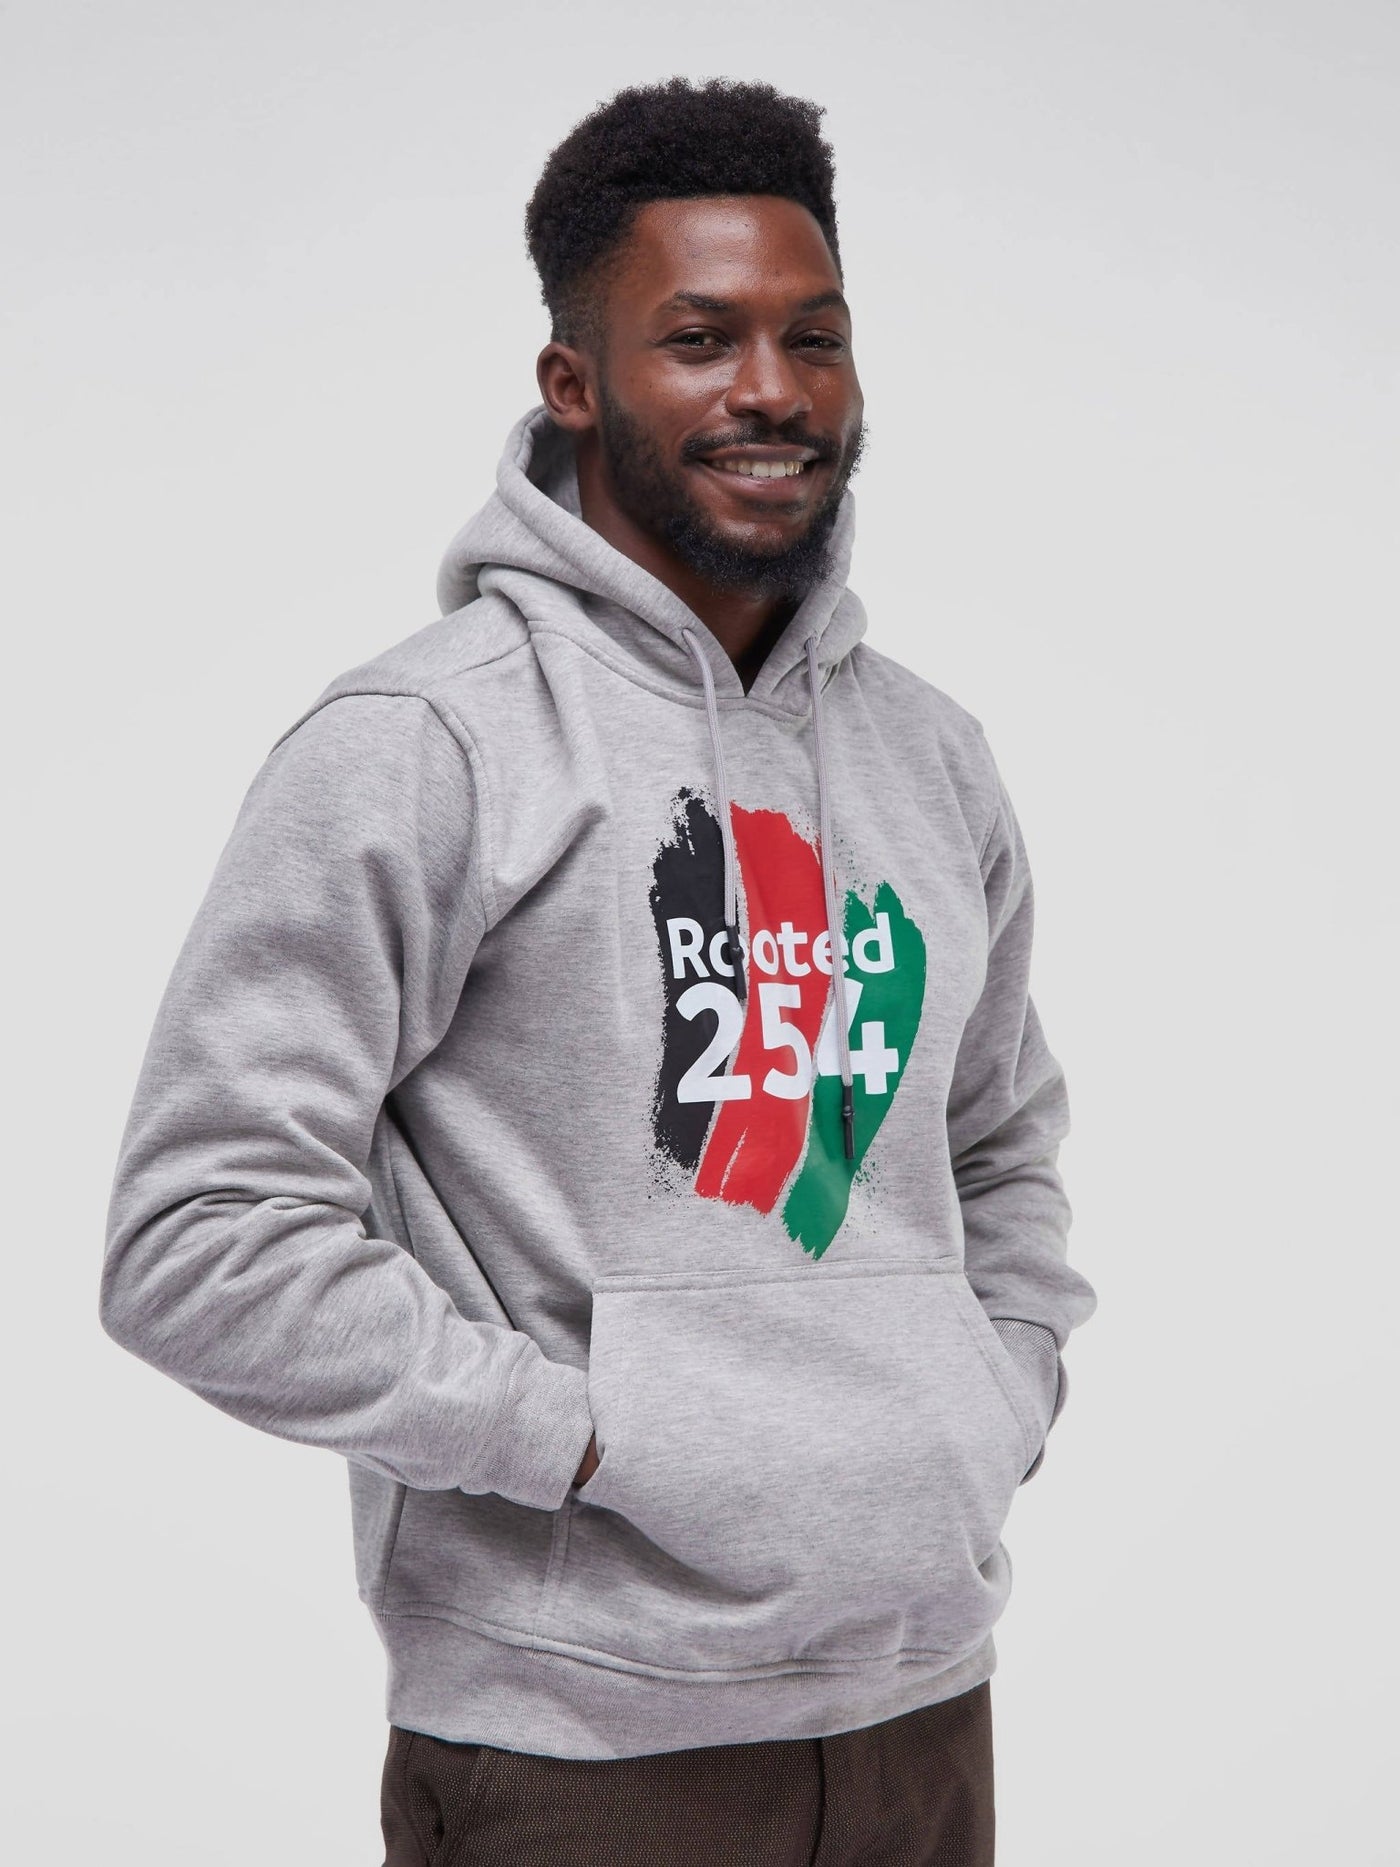 Rooted 254 Hoodie - Grey - Shop Zetu Kenya